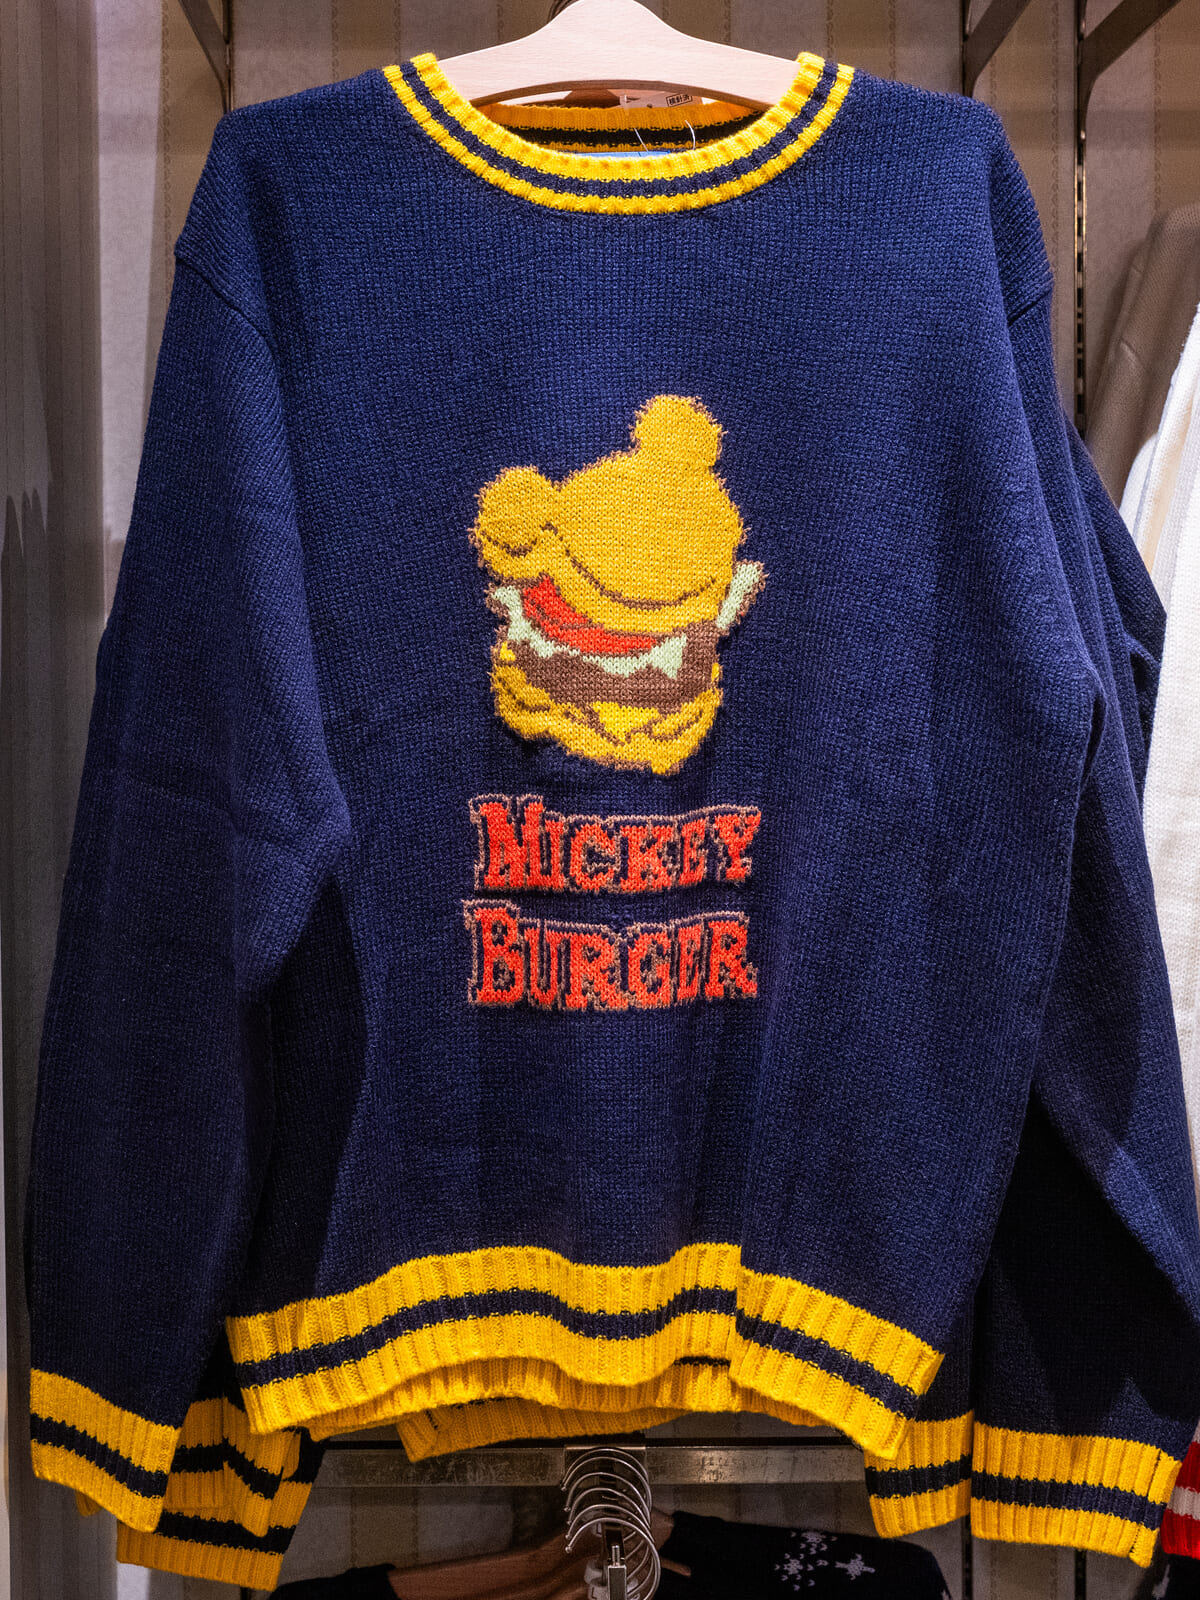 東京ディズニーランド｢ミッキーバーガー｣セーター1